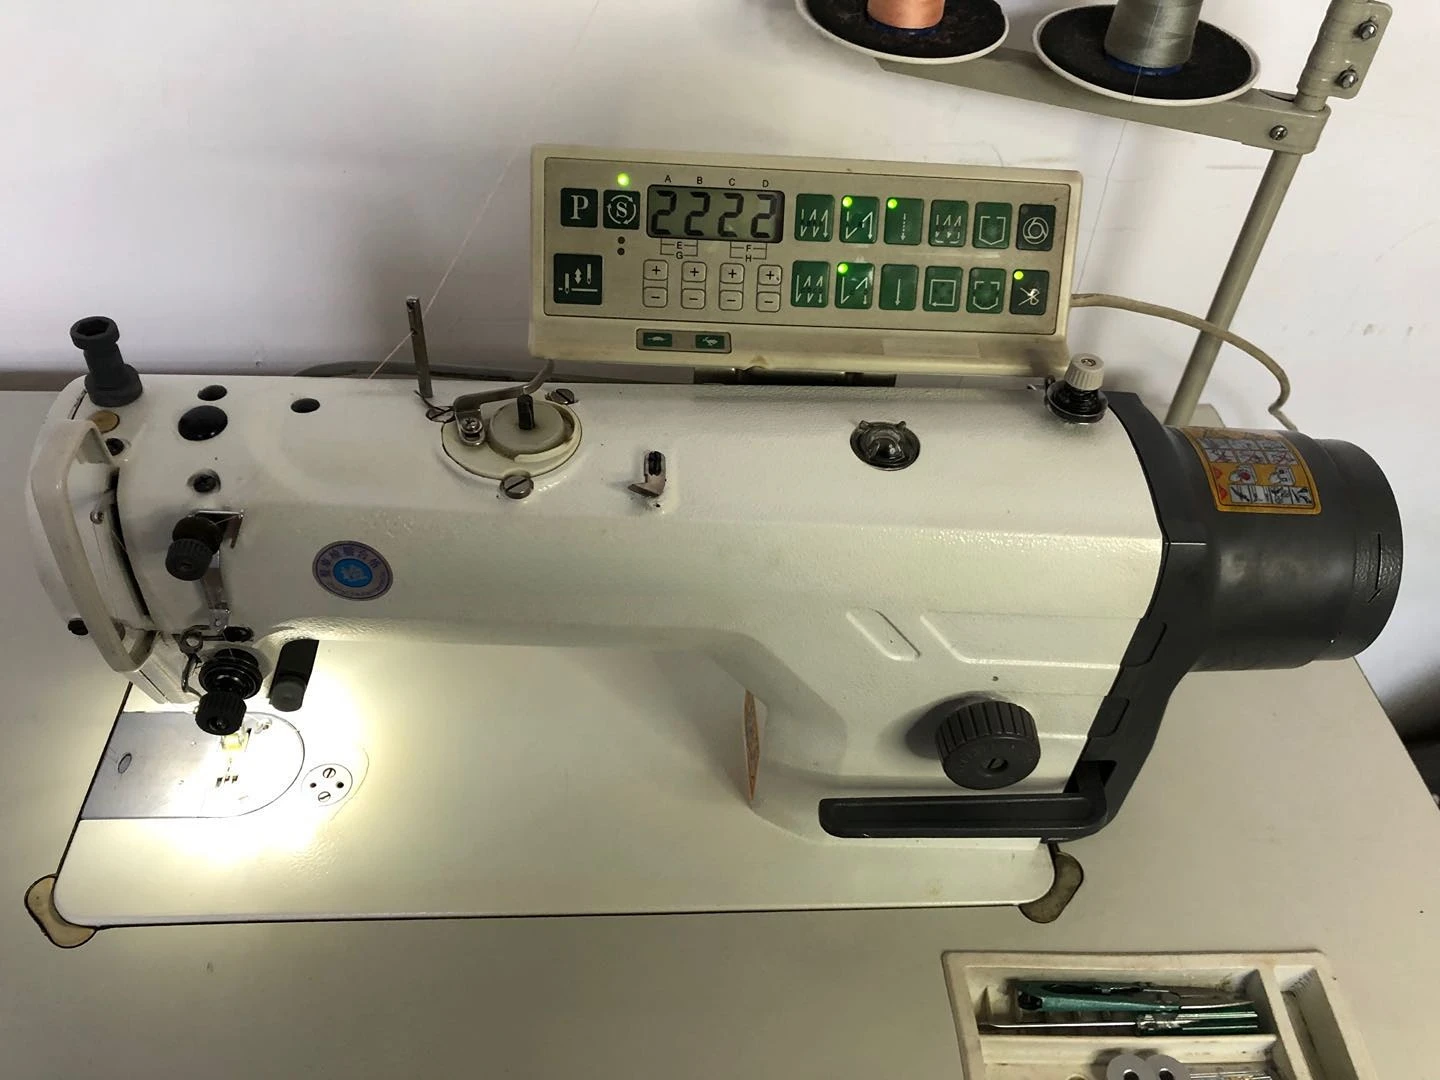 Sewing machine Janome 450mg computer - AliExpress